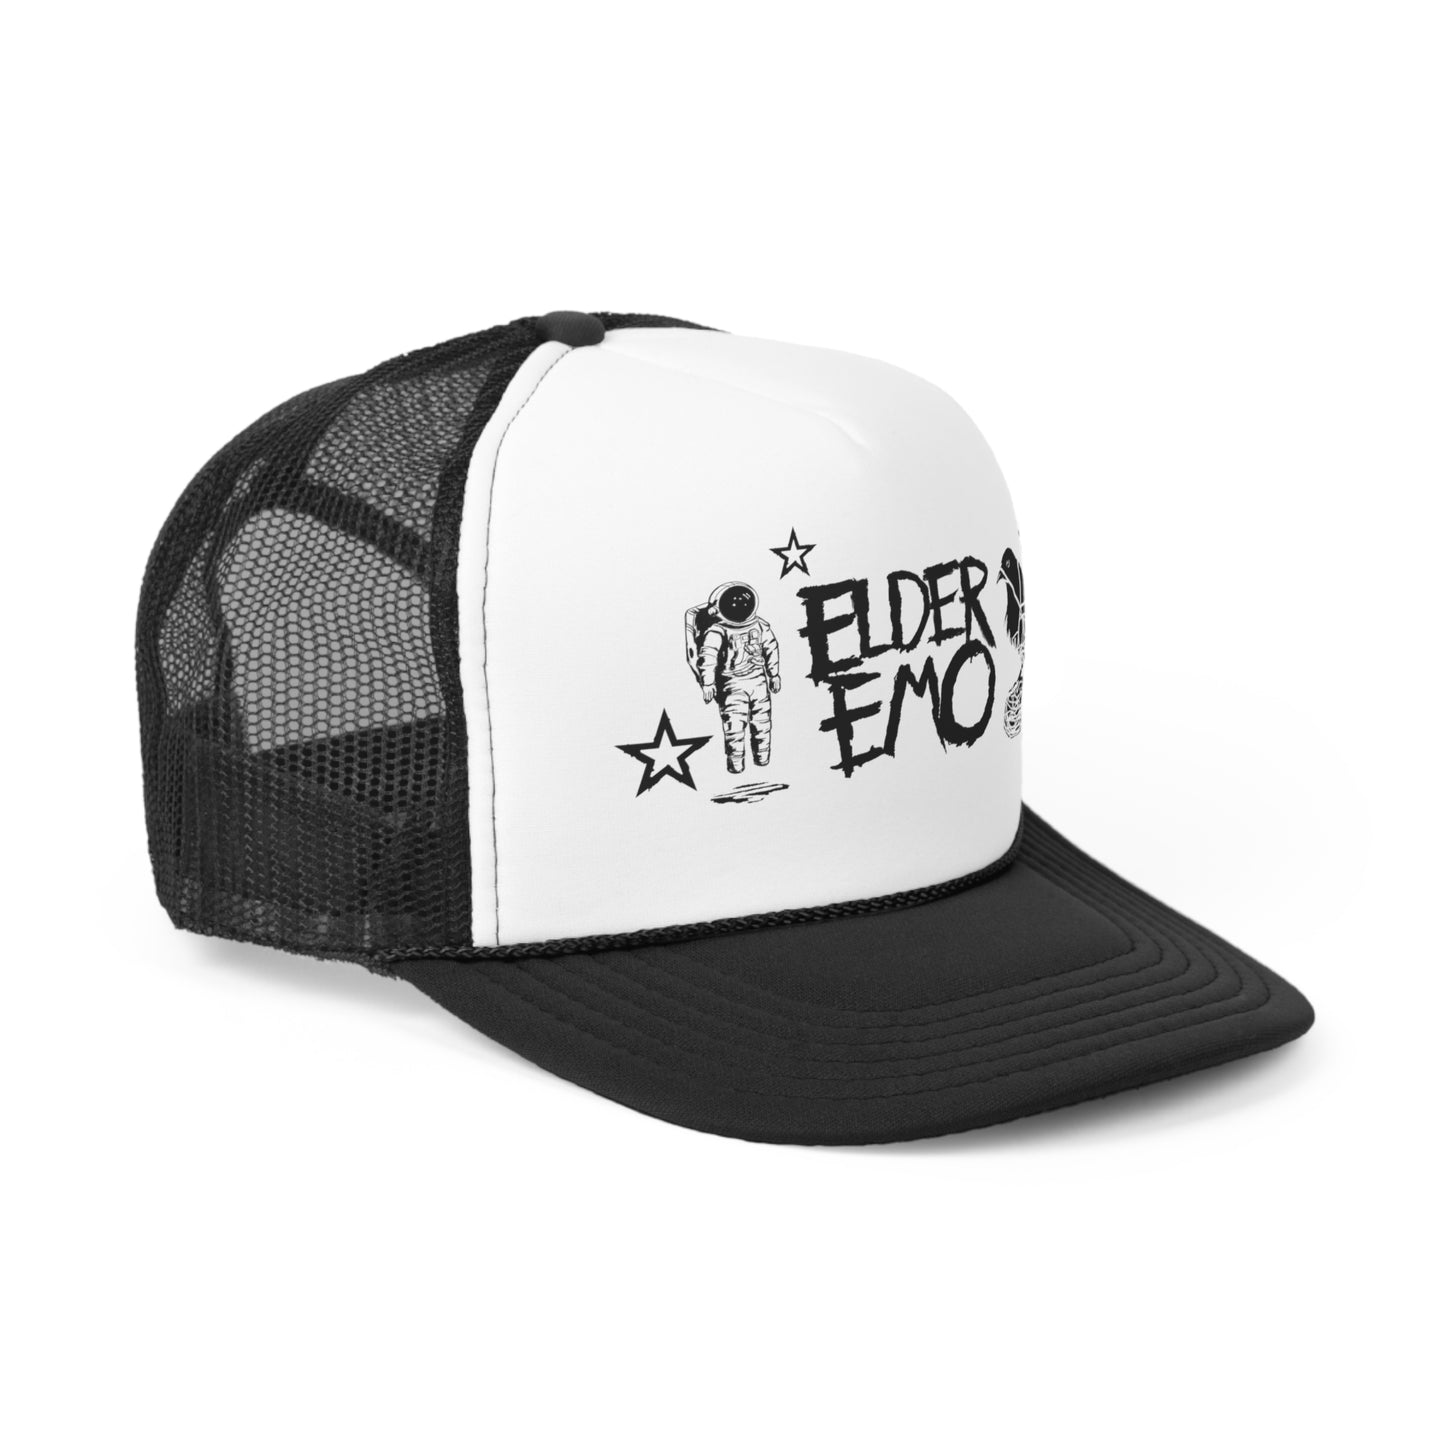 Elder Emo hat